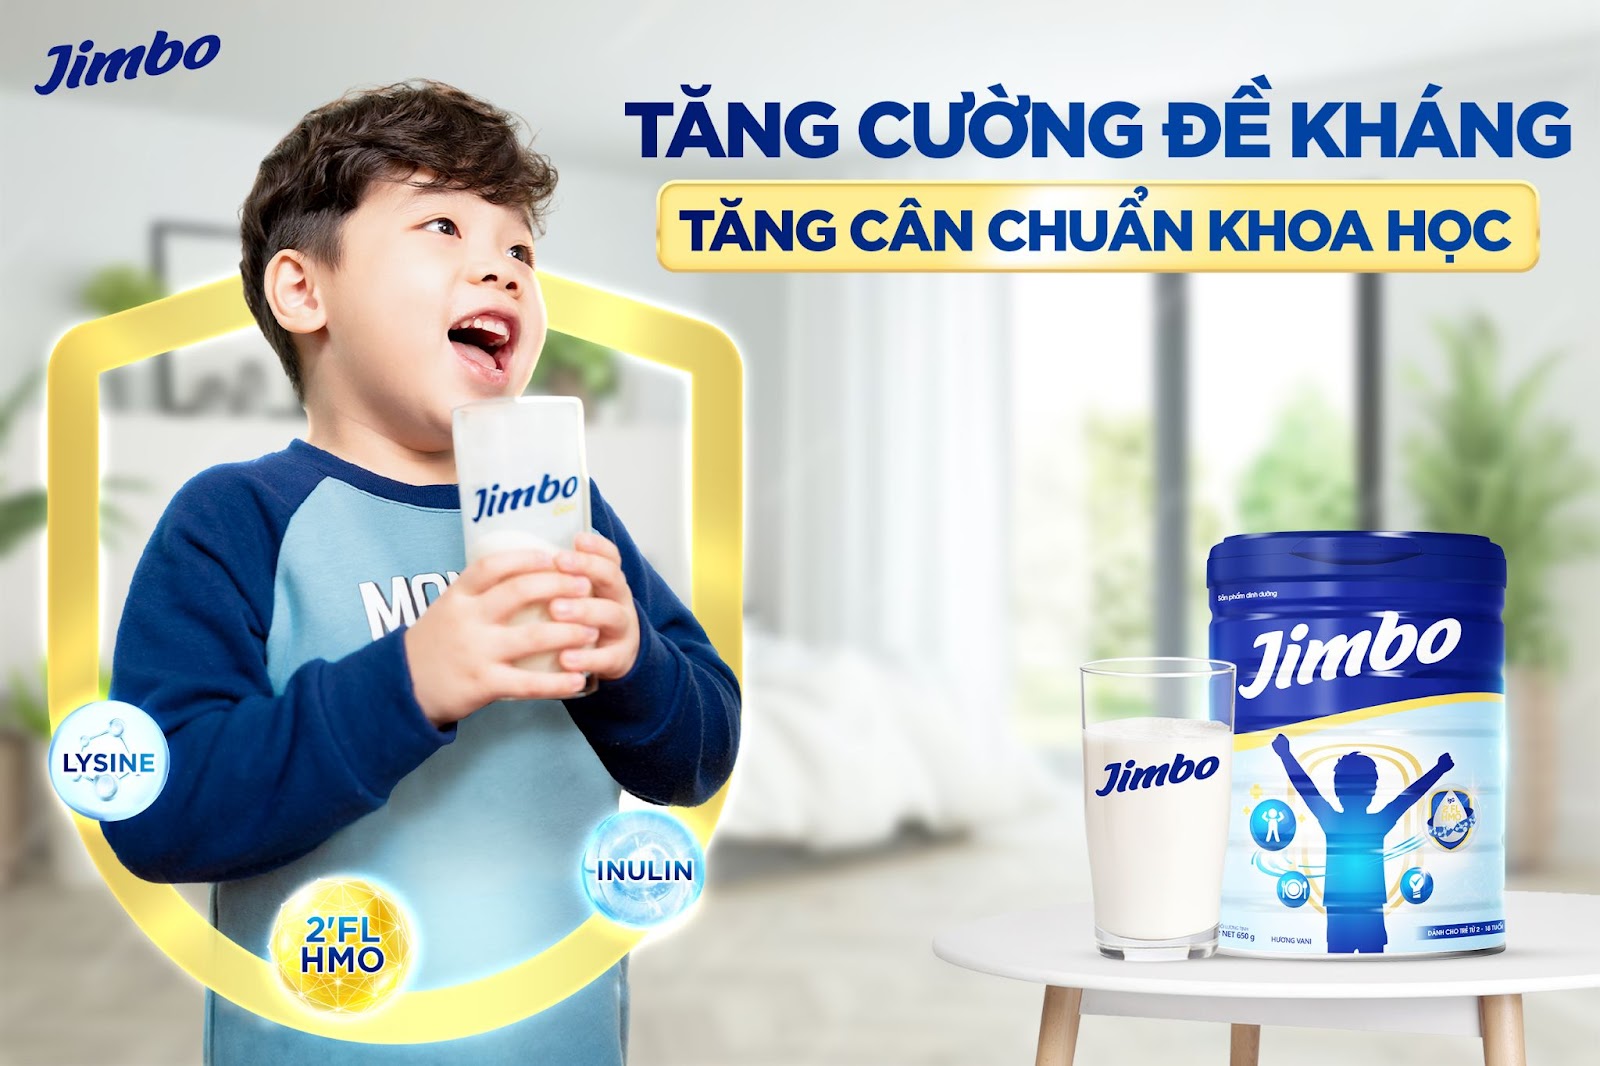 Jimbo - Bộ ba dưỡng chất “vàng” tăng cường miễn dịch toàn diện - 1